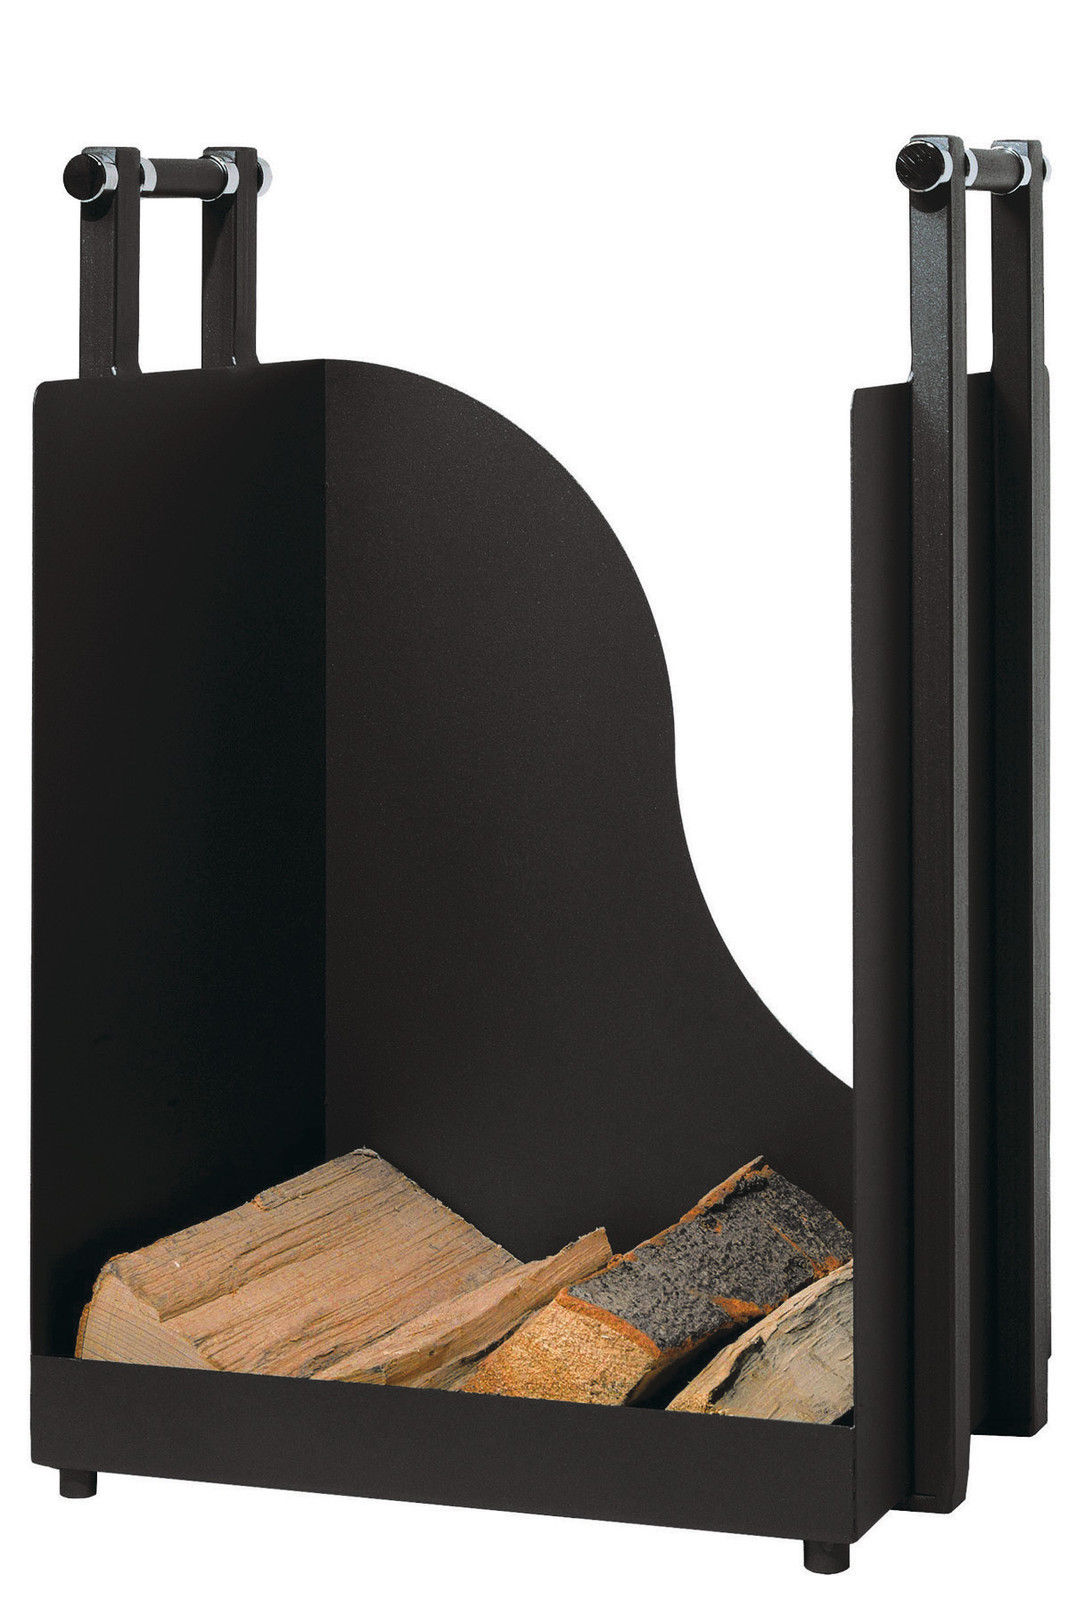 Holzkorb Rollen Kaminzubehör Holzkiste Beschlagsshop Metall Kaminzubehör beschichtet - schwarz mit optional - Holzkörbe |